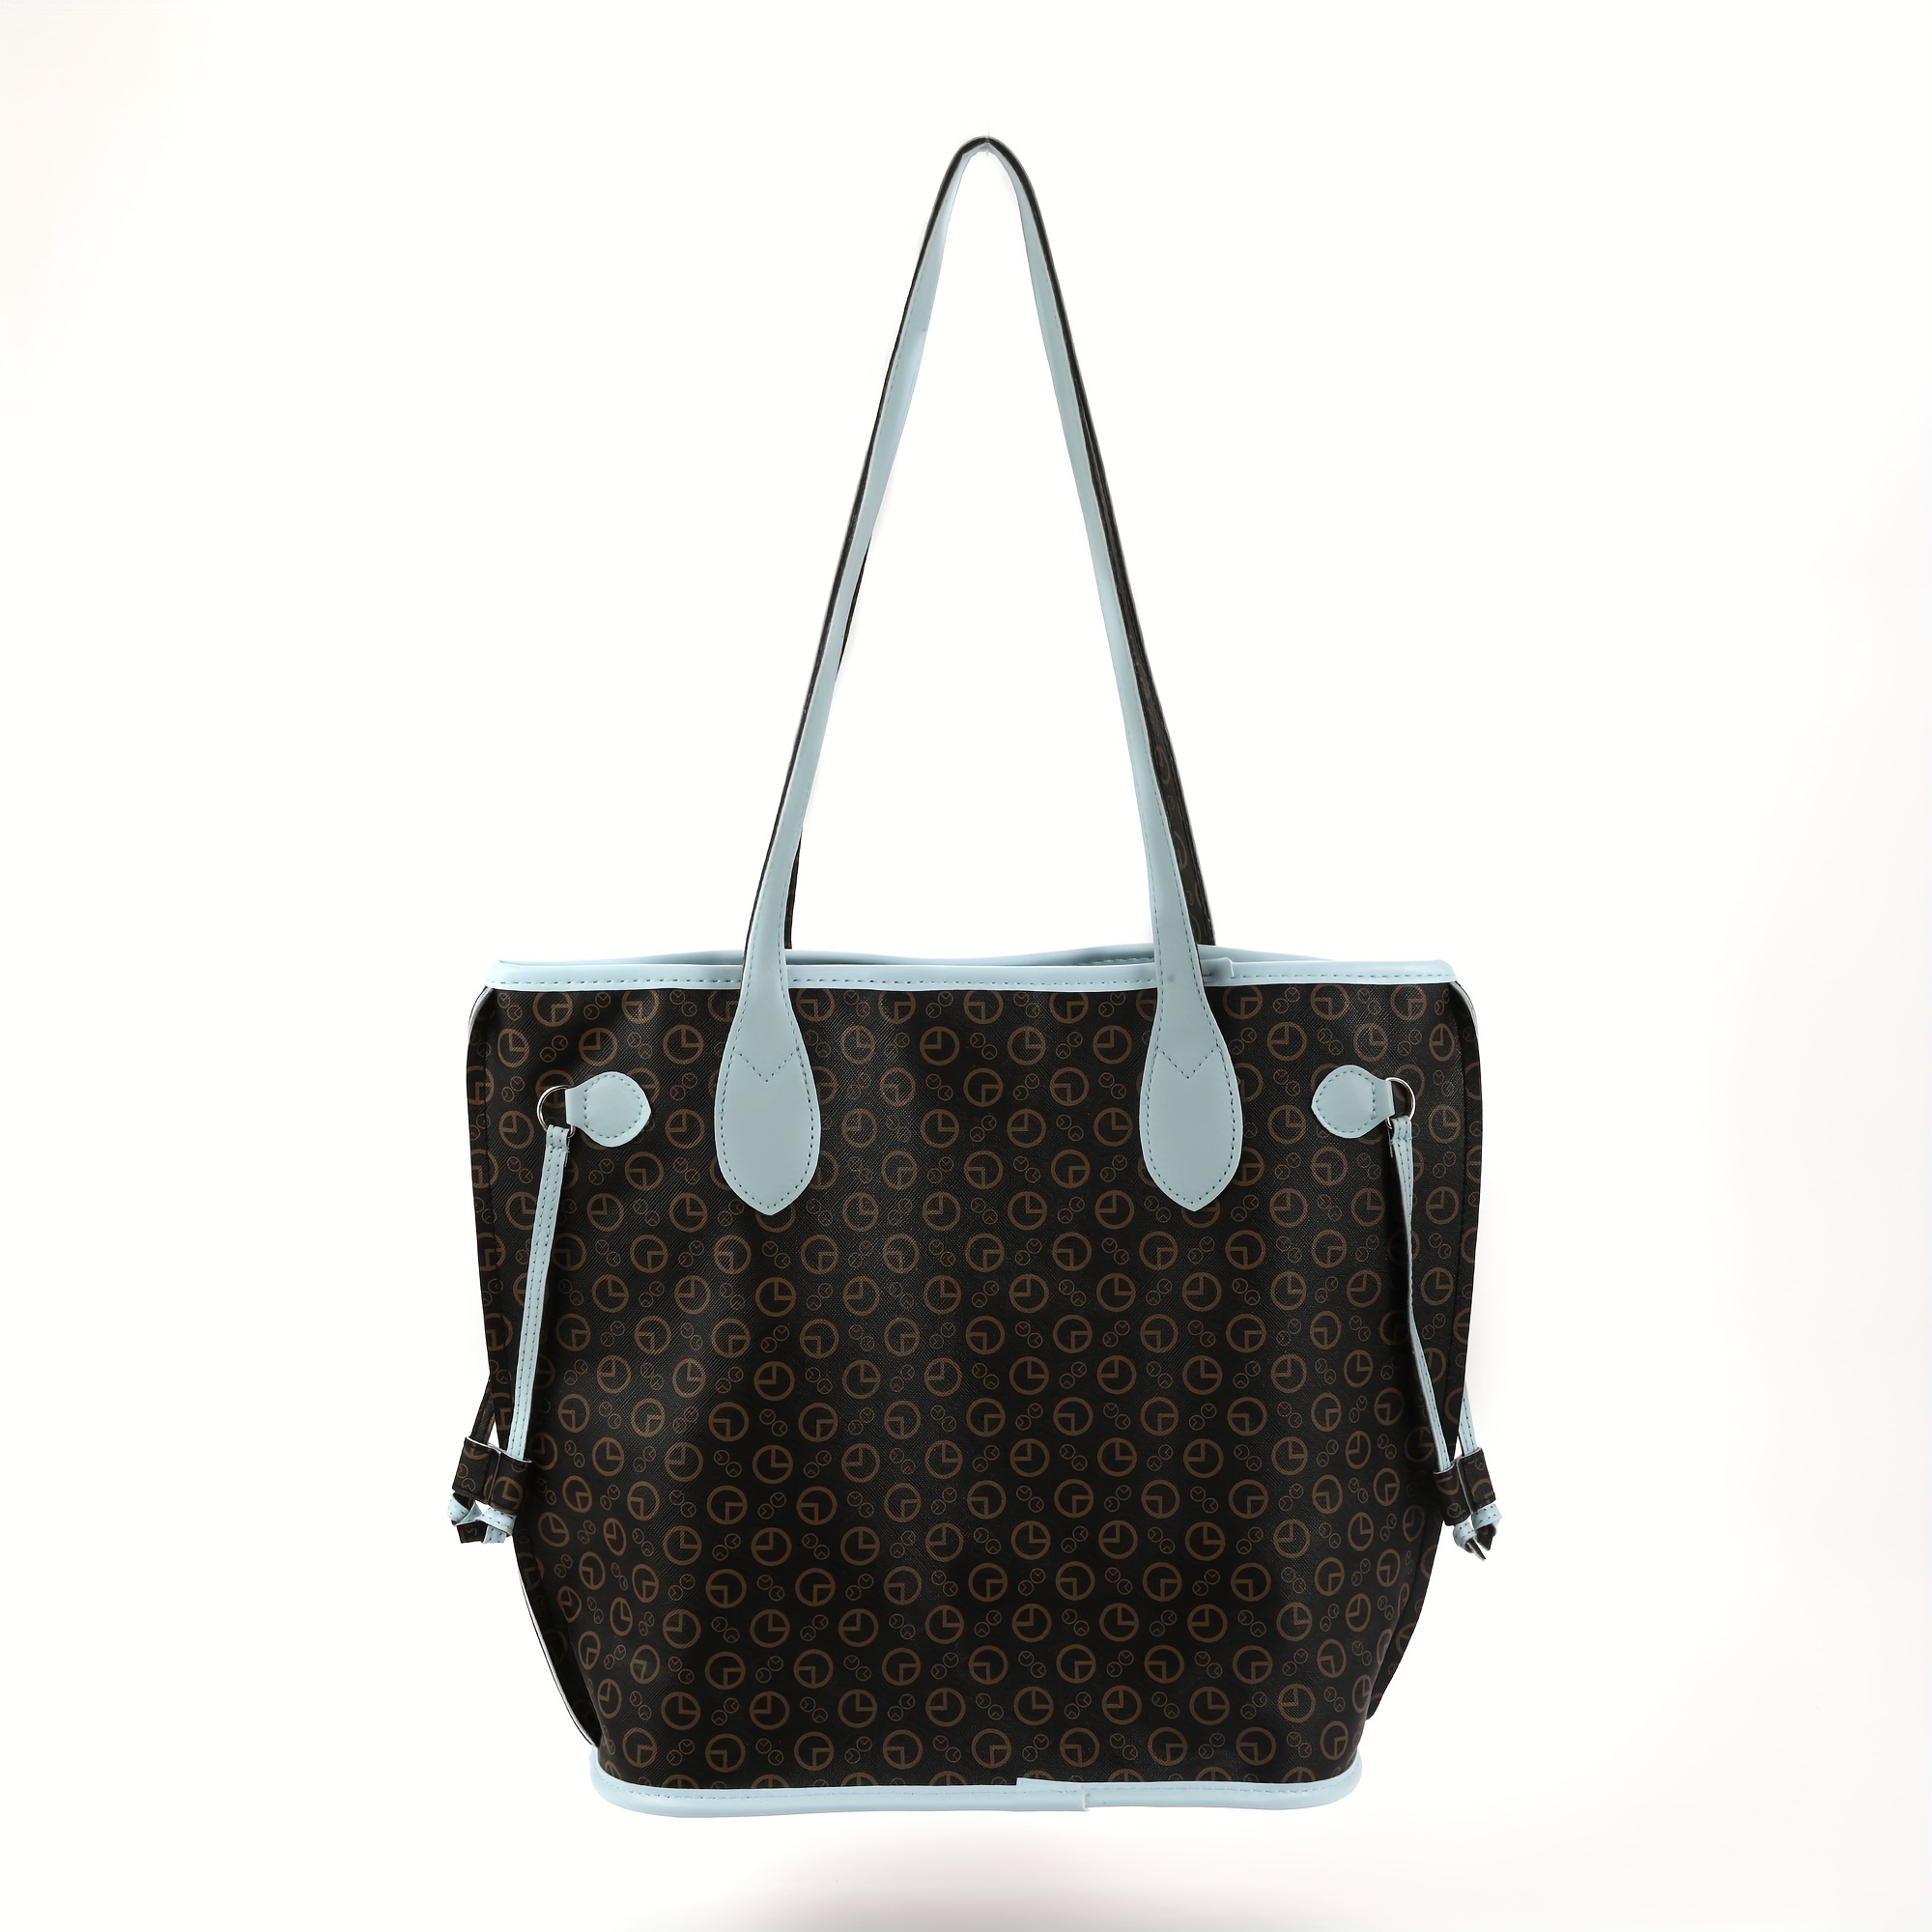 Men's Handbag Tote Bag, Fashion Shopping Bag Shoulder Bag For